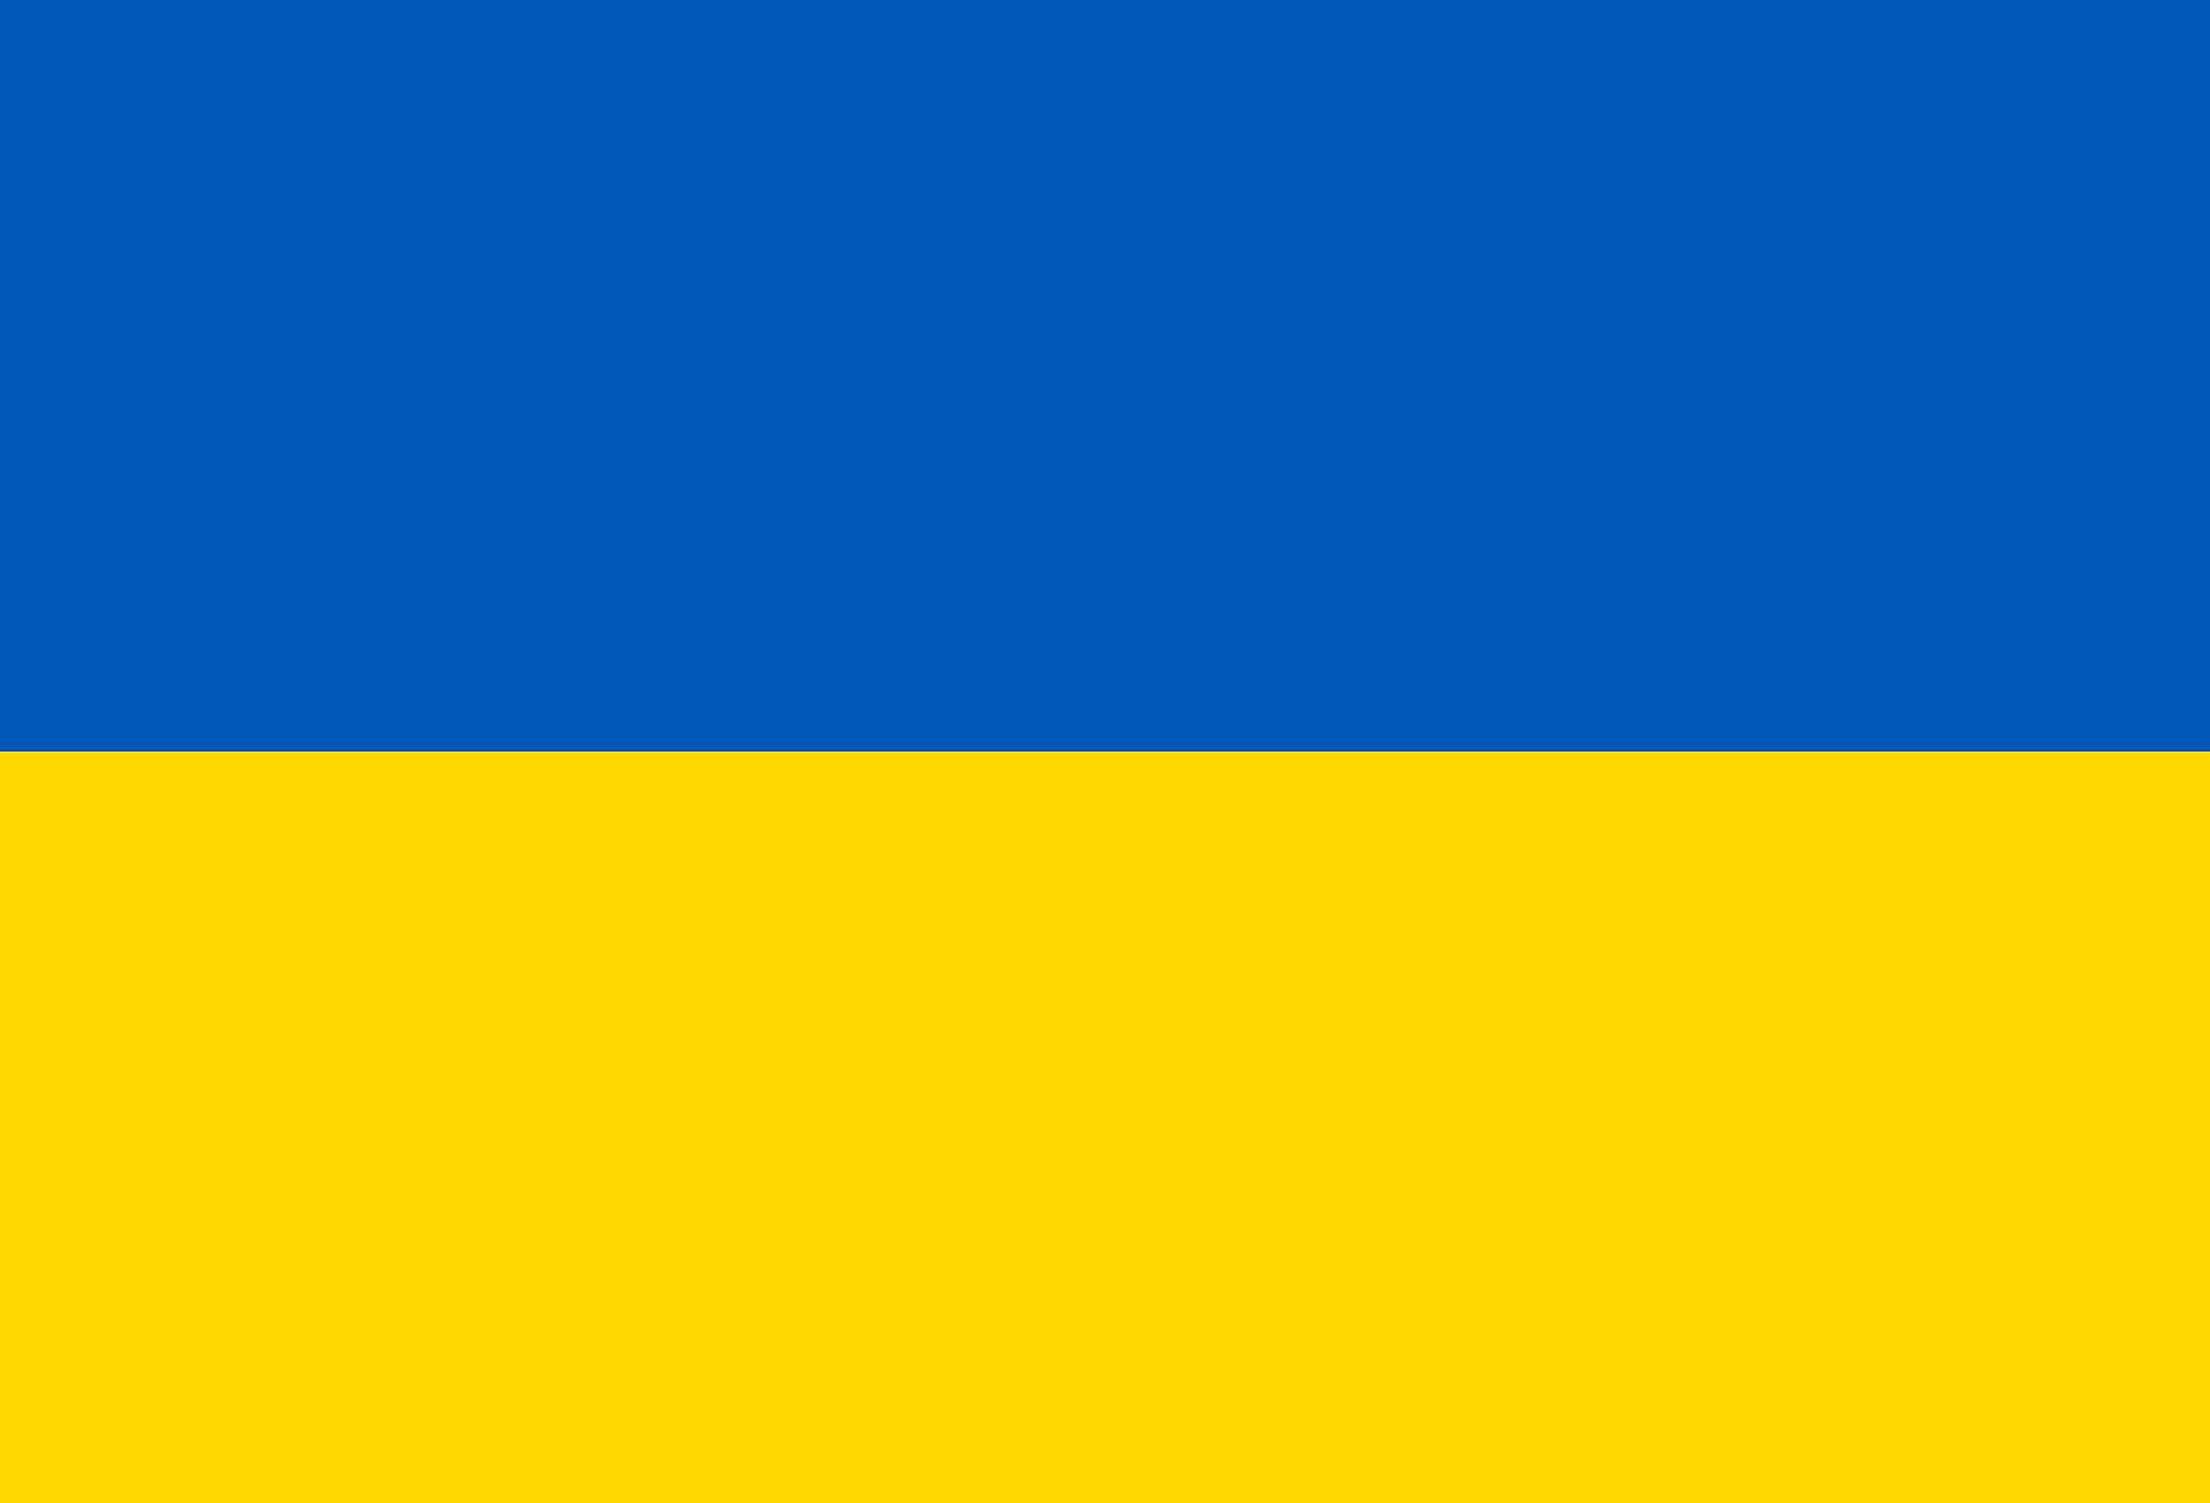 Flag of Ukraine Free Stock Photo